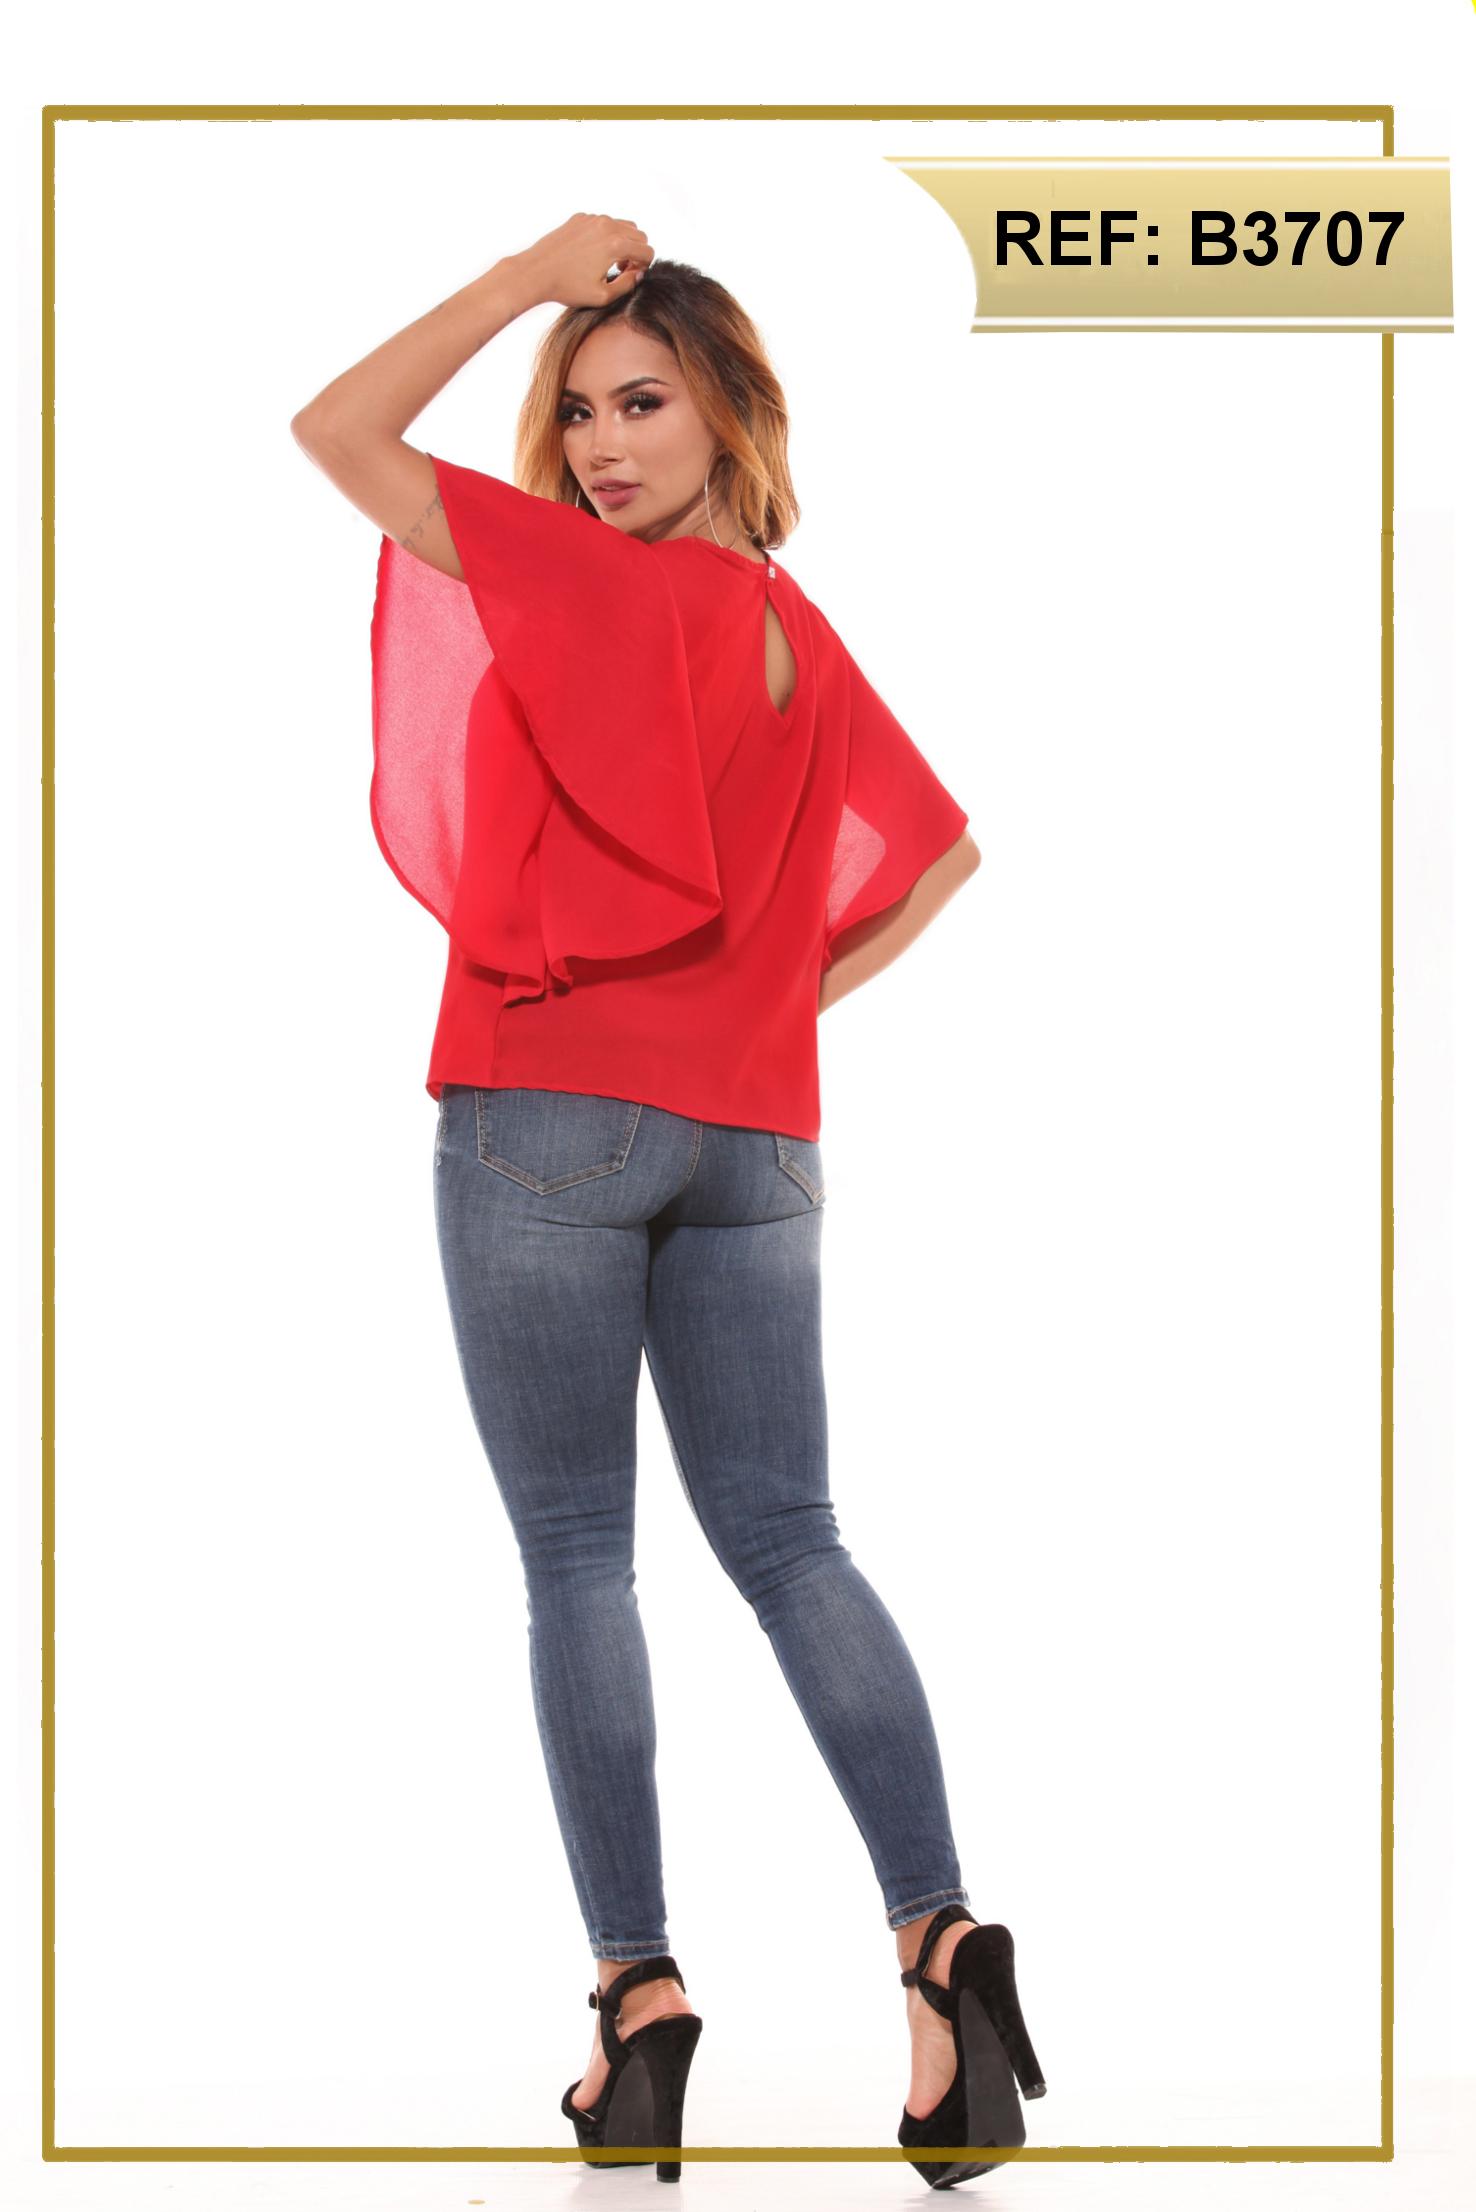 Blusa Colombiana de Dama con mangas cortas y anchas que le dan un hermoso toque a tu estilo original